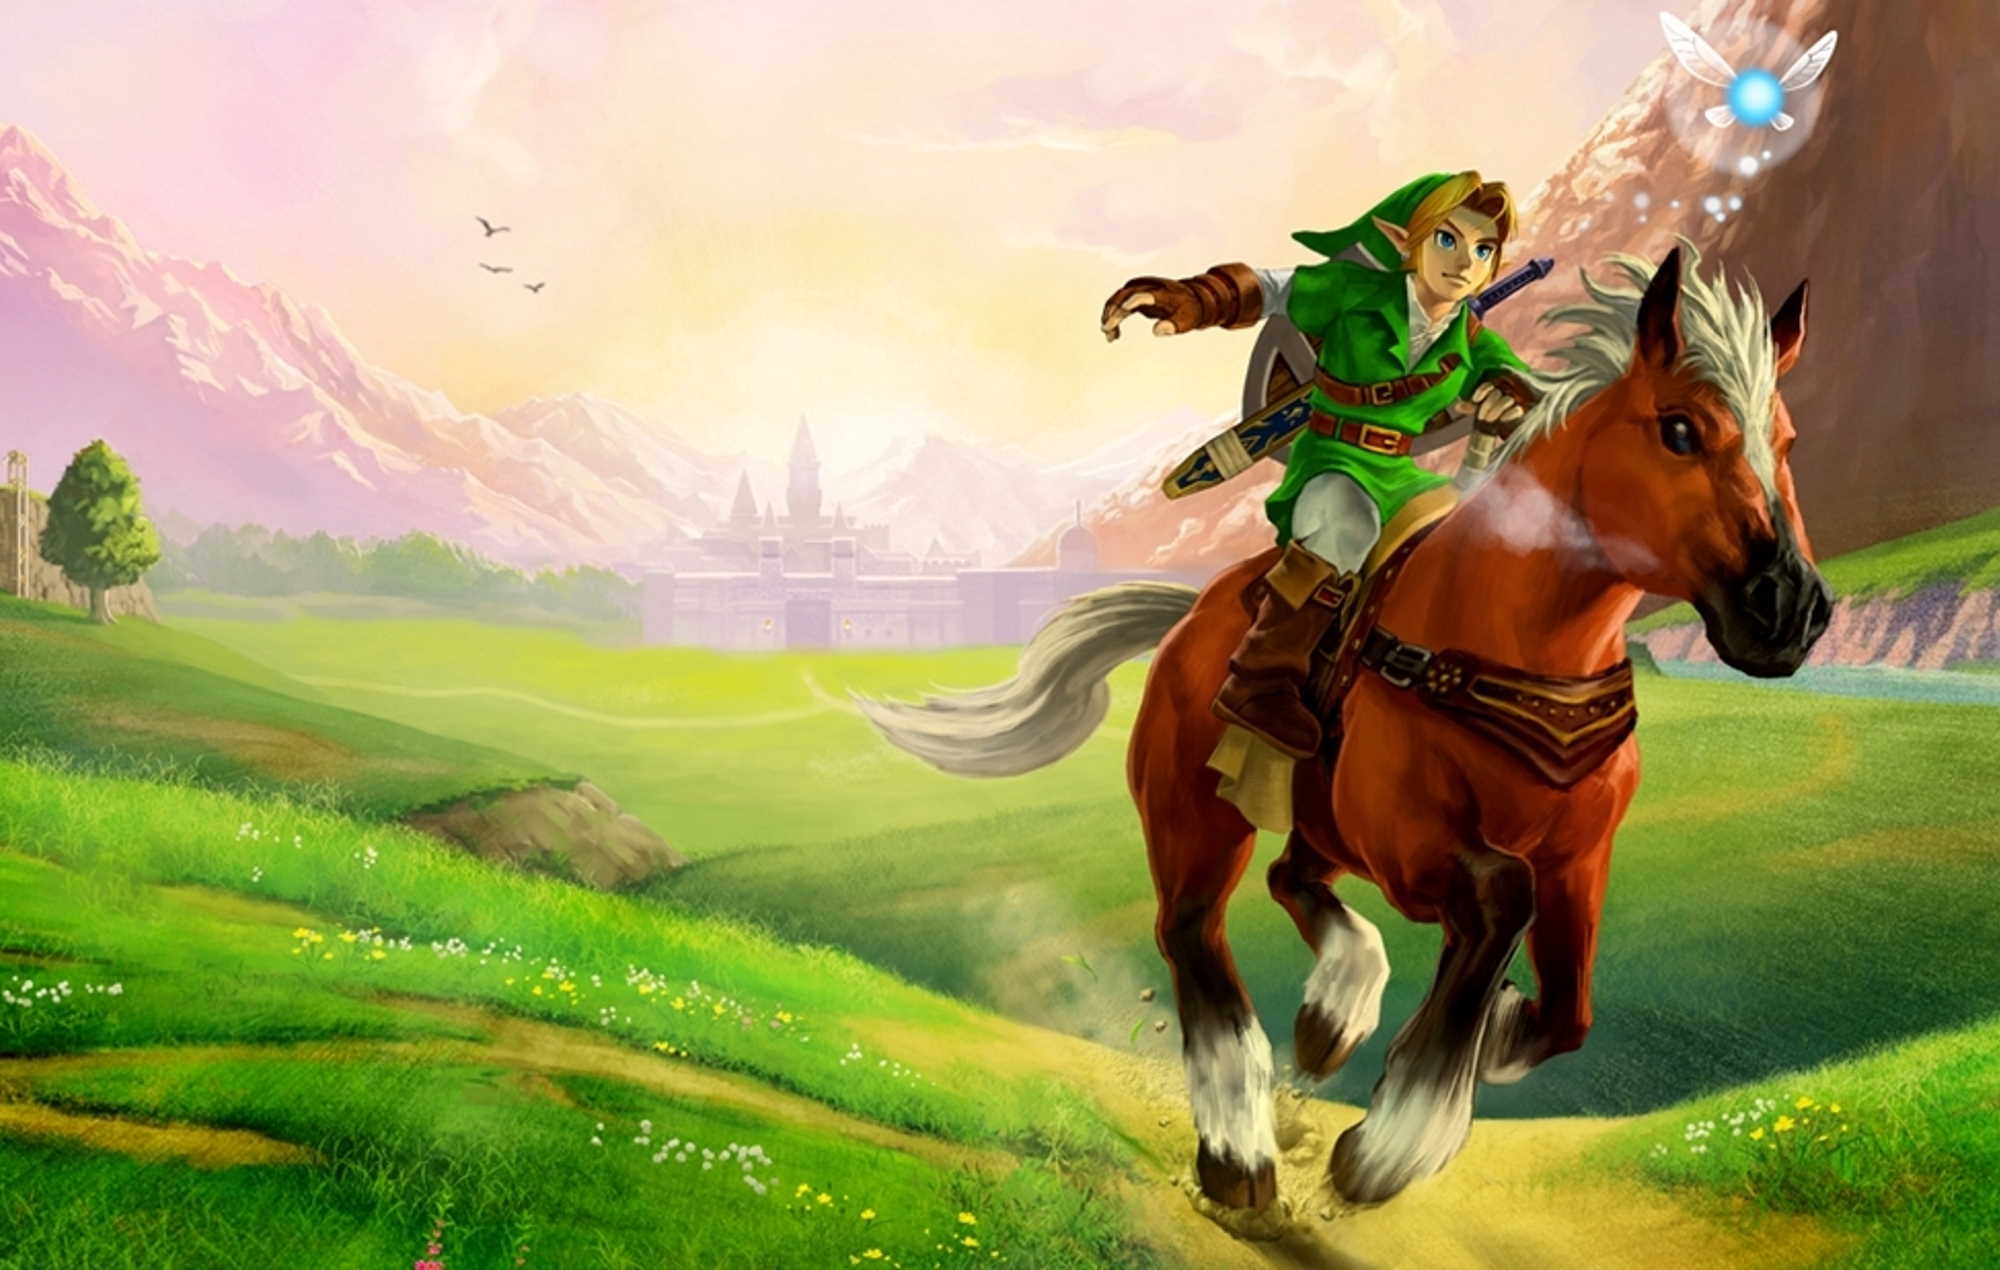 Los fans especulan con la posibilidad de un parque temático de "Legend Of Zelda